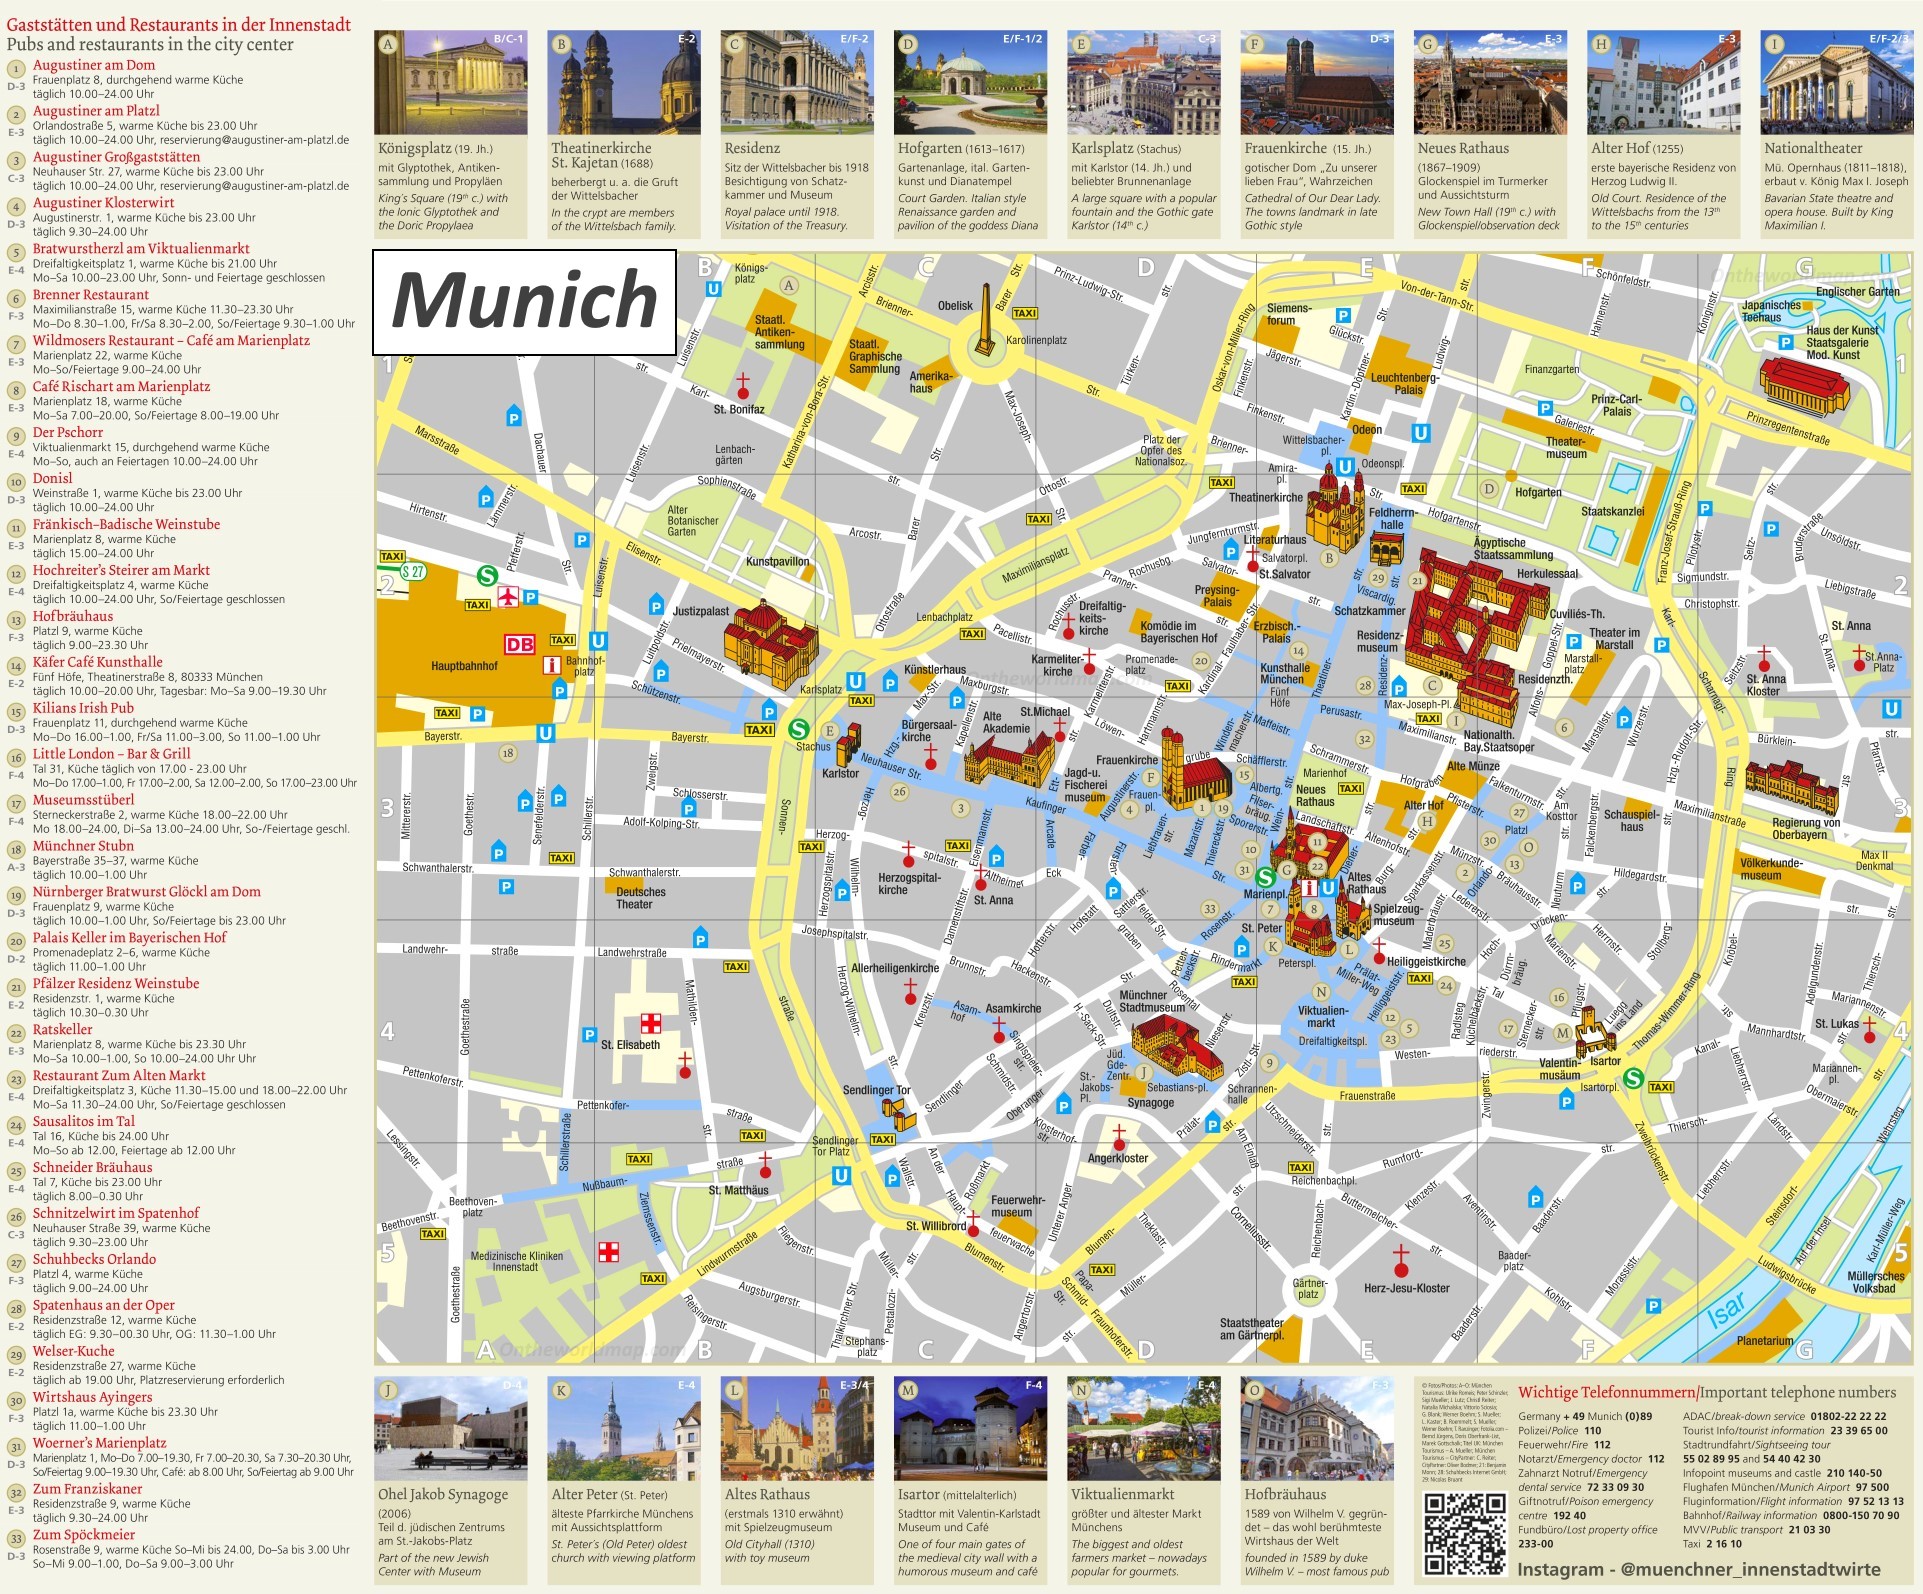 munich tourist information center